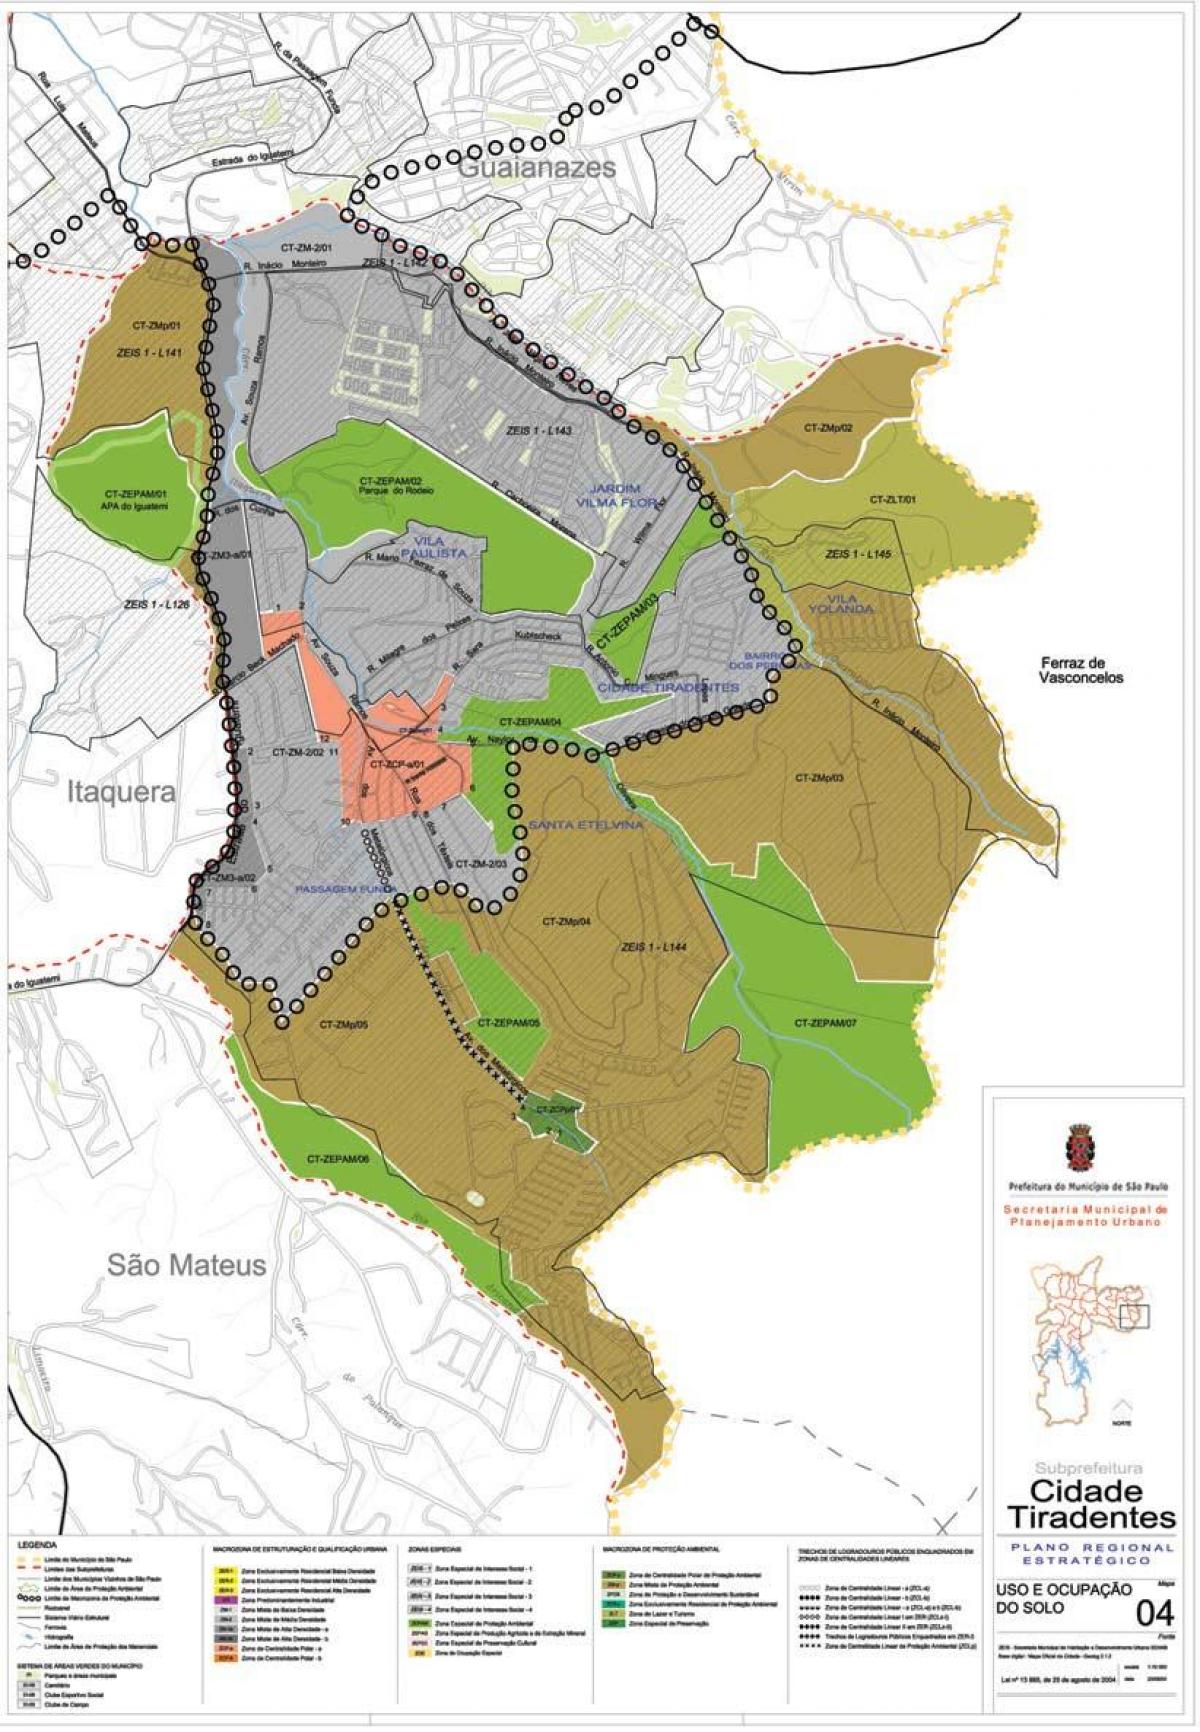 નકશો Cidade Tiradentes સાઓ પાઉલો - વ્યવસાય જમીન